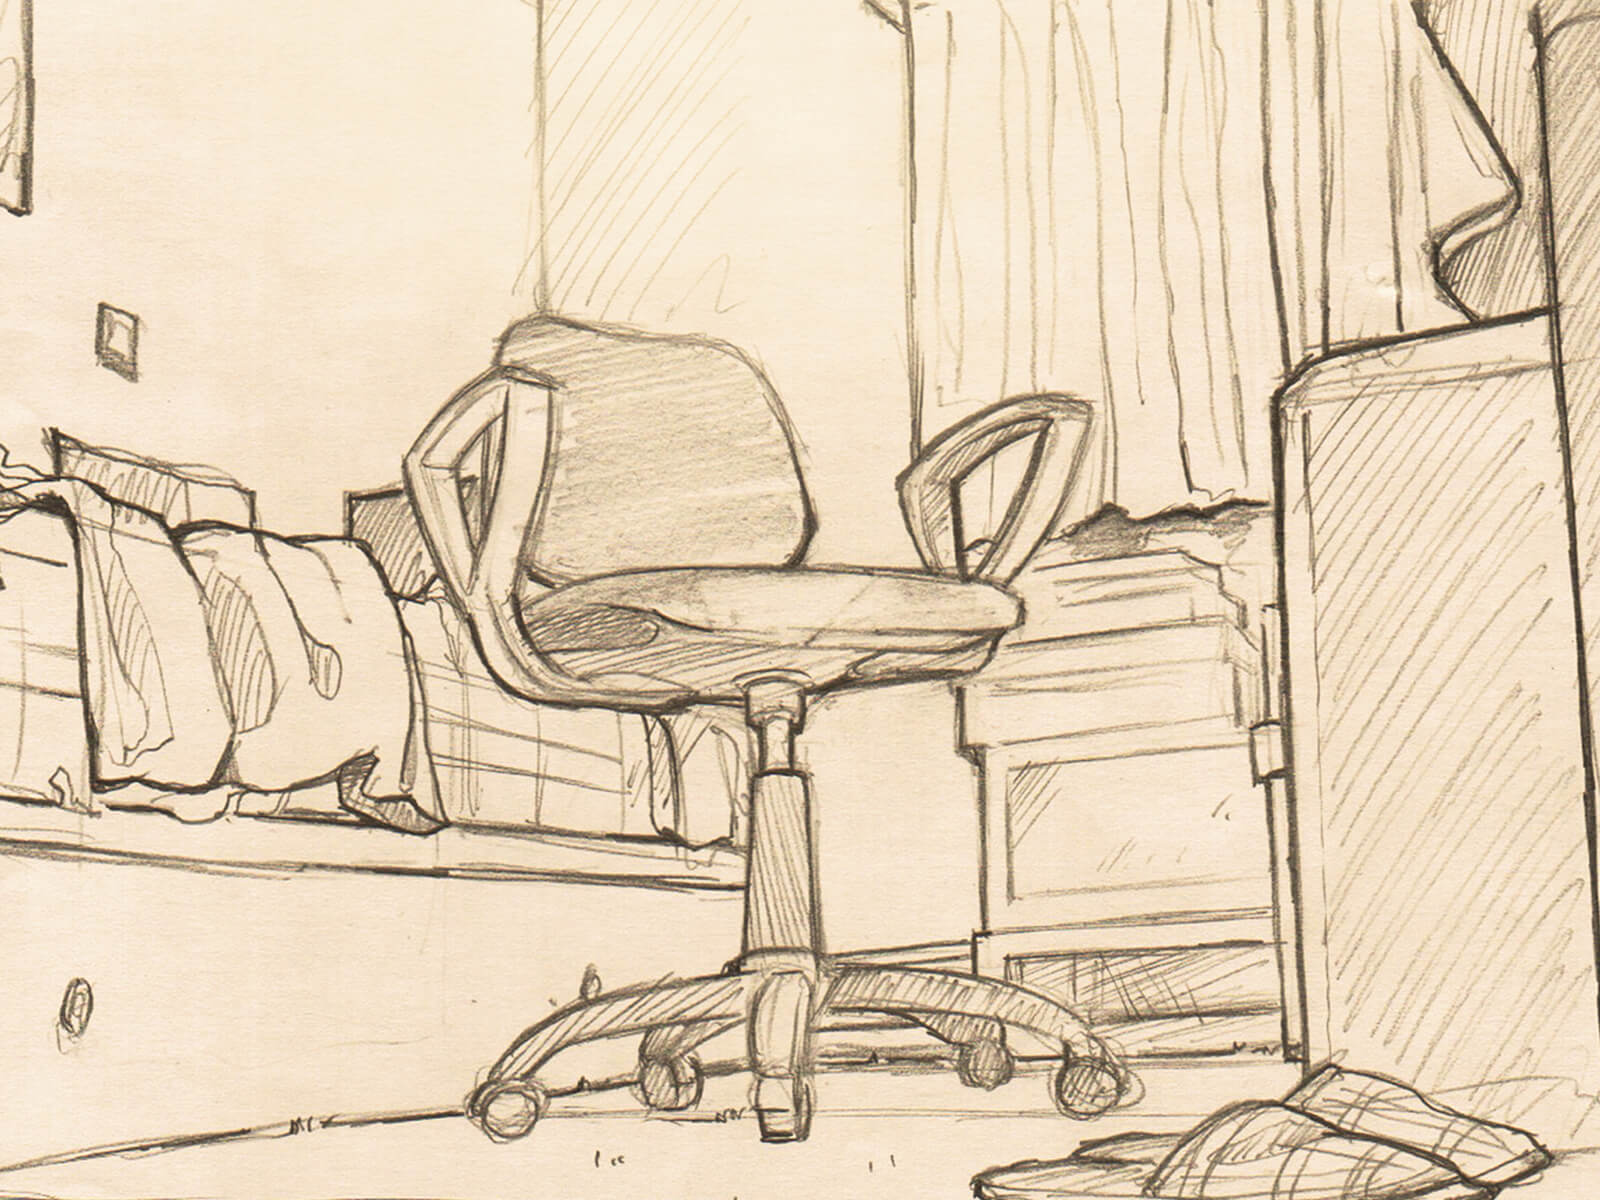 Vista en blanco y negro del esbozo de un dormitorio visto desde el suelo. Una silla de ordeandor con ruedas es el foco de la obra.